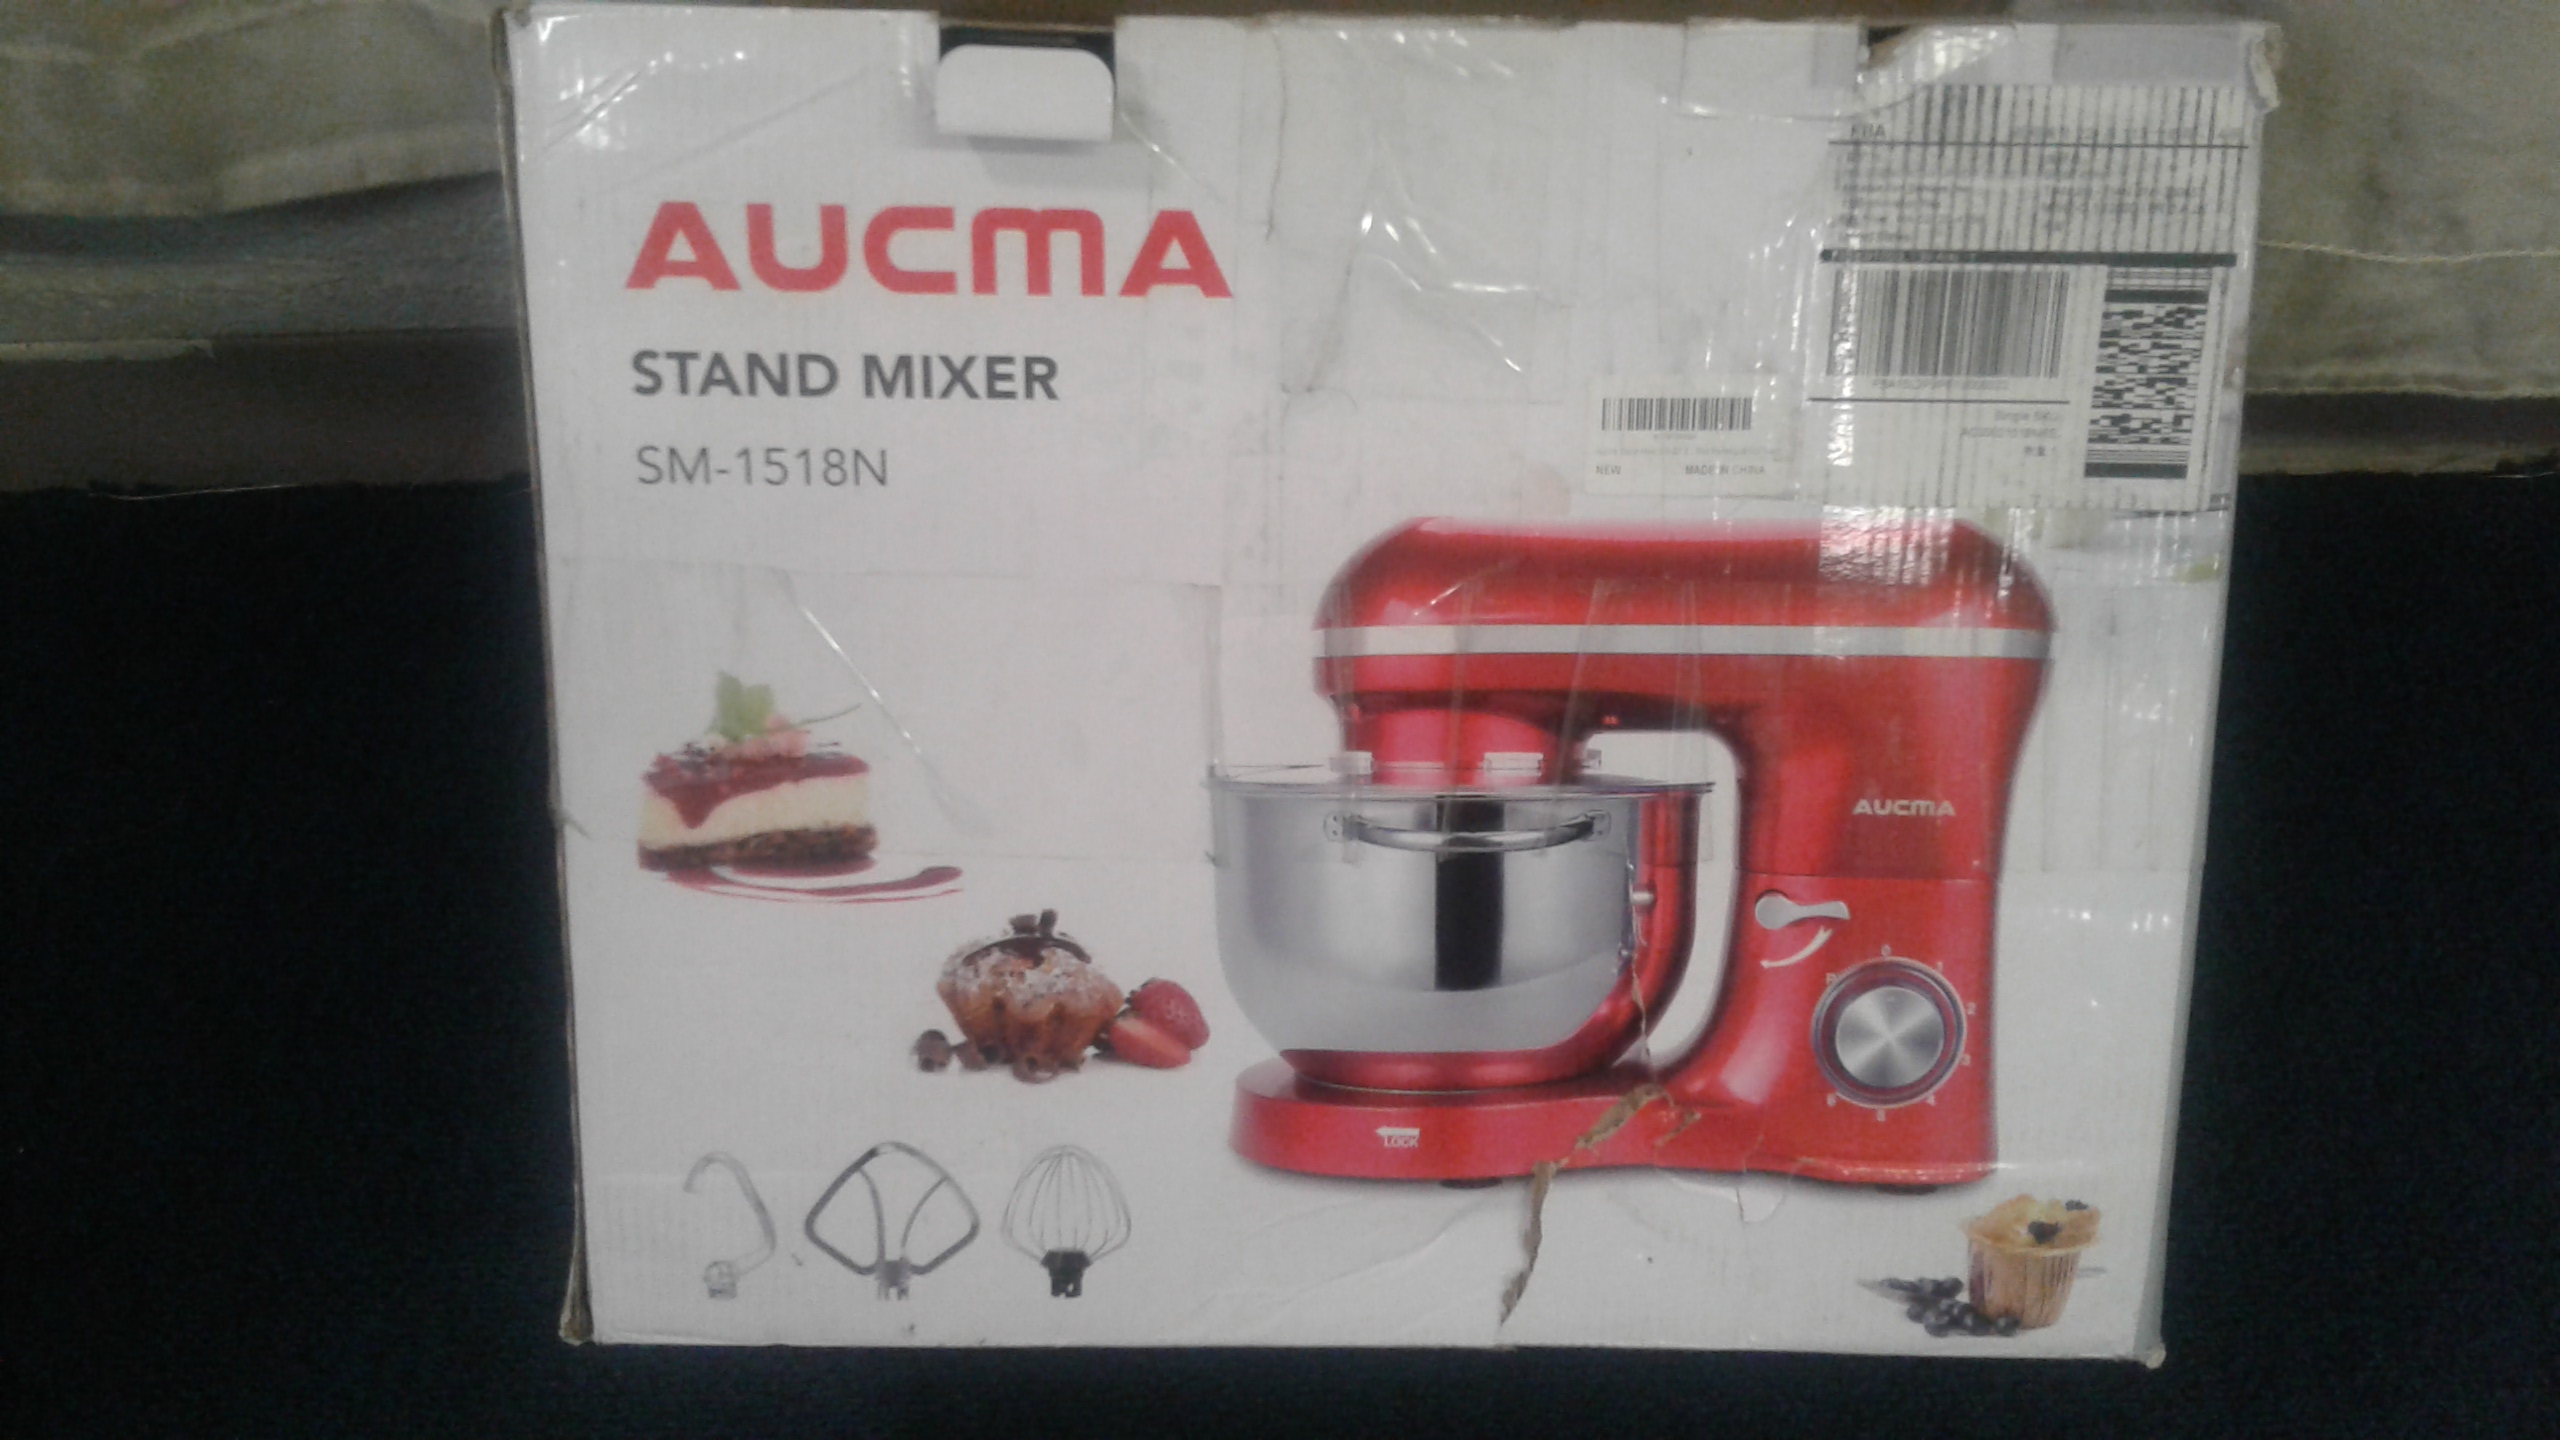 Aucma SM-1518N 6.5QT 660W 6 Speed Tilt Head Food Stand Mixer